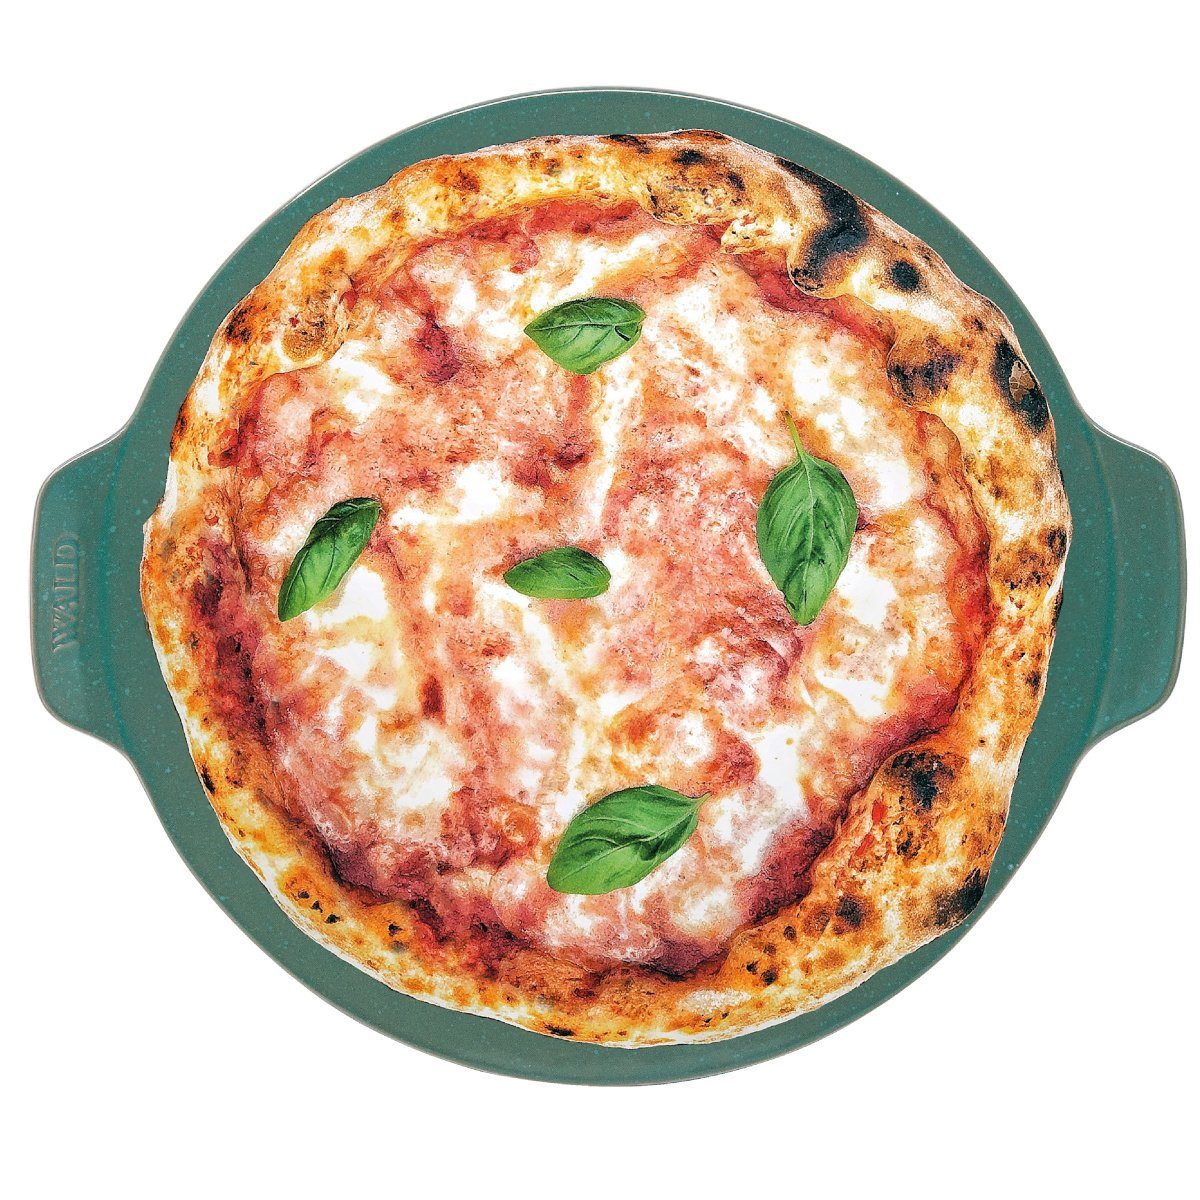 WALD Pizzastein Pizzaplatte 34 cm, dunkelgrau, Ton, durchgebrannt und glasiert grün